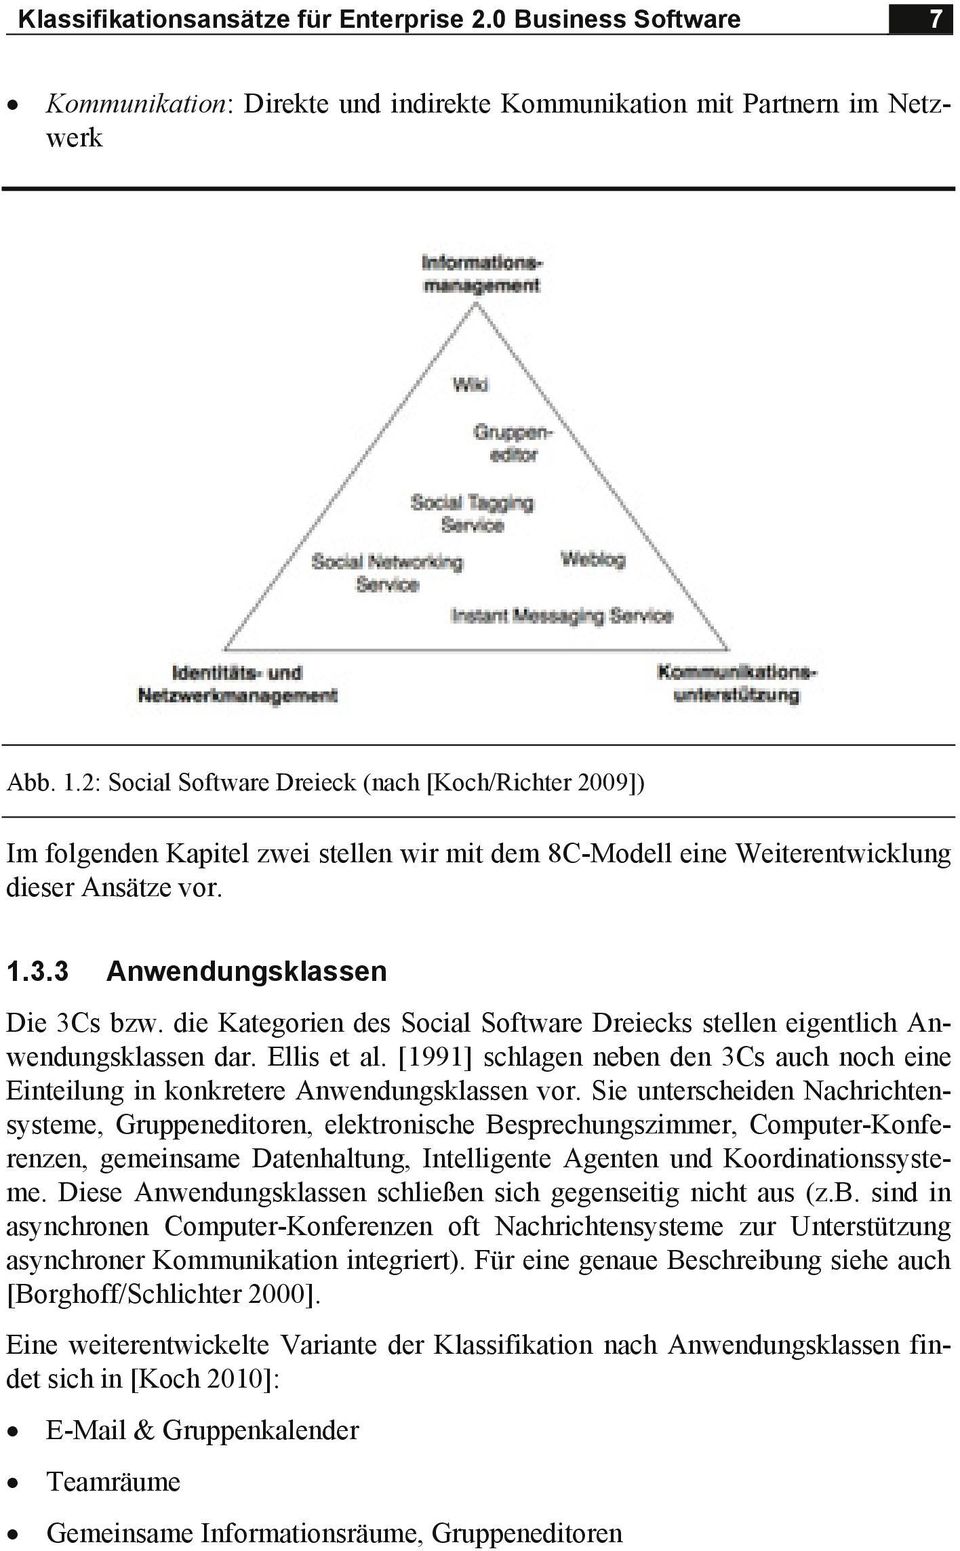 die Kategorien des Social Software Dreiecks stellen eigentlich Anwendungsklassen dar. Ellis et al. [1991] schlagen neben den 3Cs auch noch eine Einteilung in konkretere Anwendungsklassen vor.